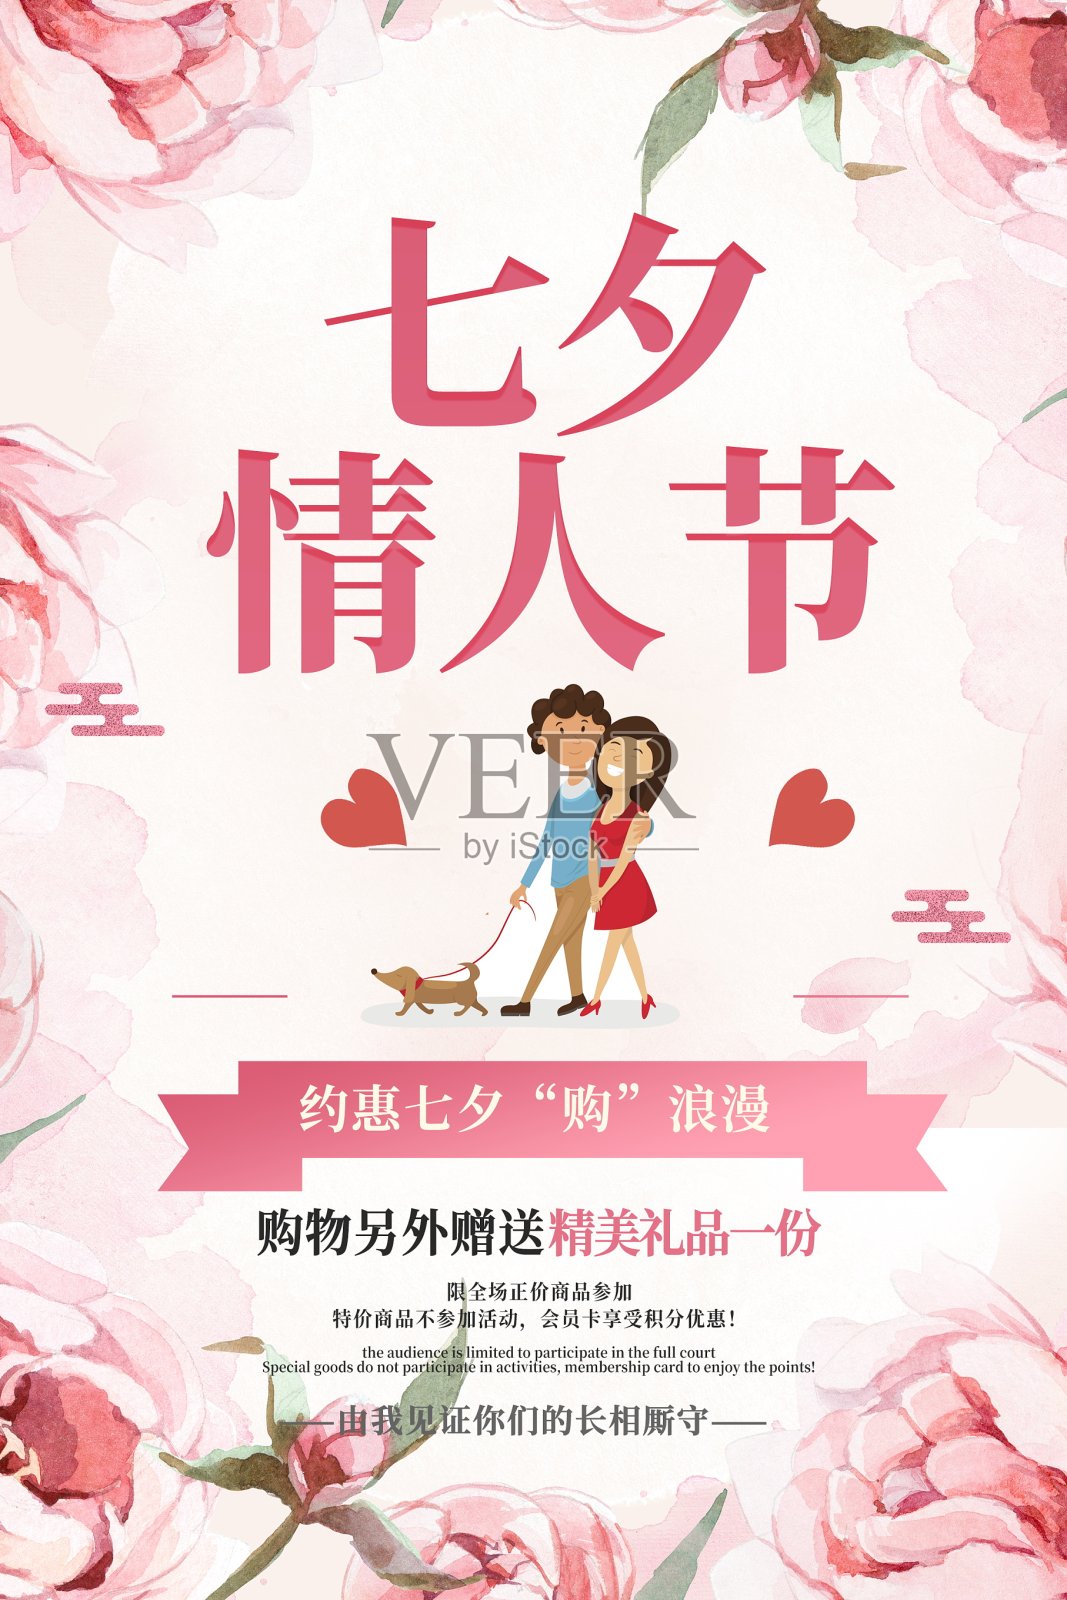 七夕情人节促销海报设计模板素材